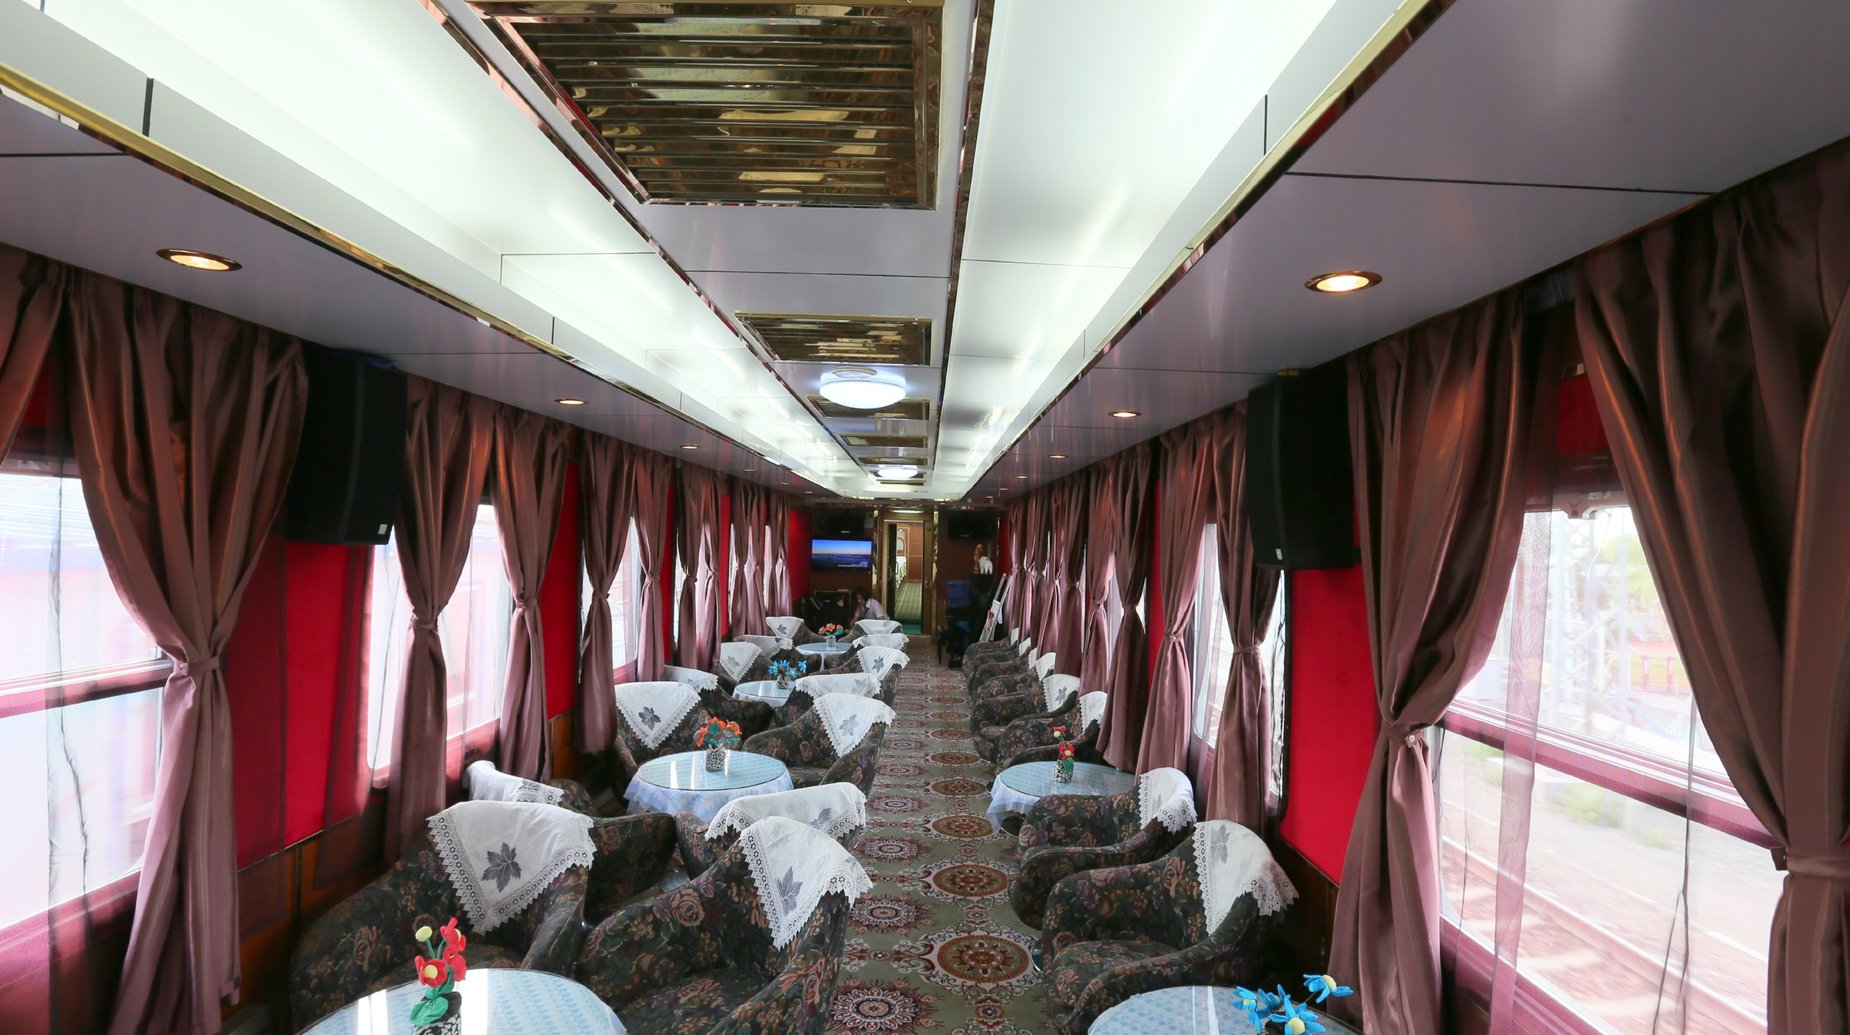 Shangri-La Express Golden Eagle Bar Lounge Car (2)